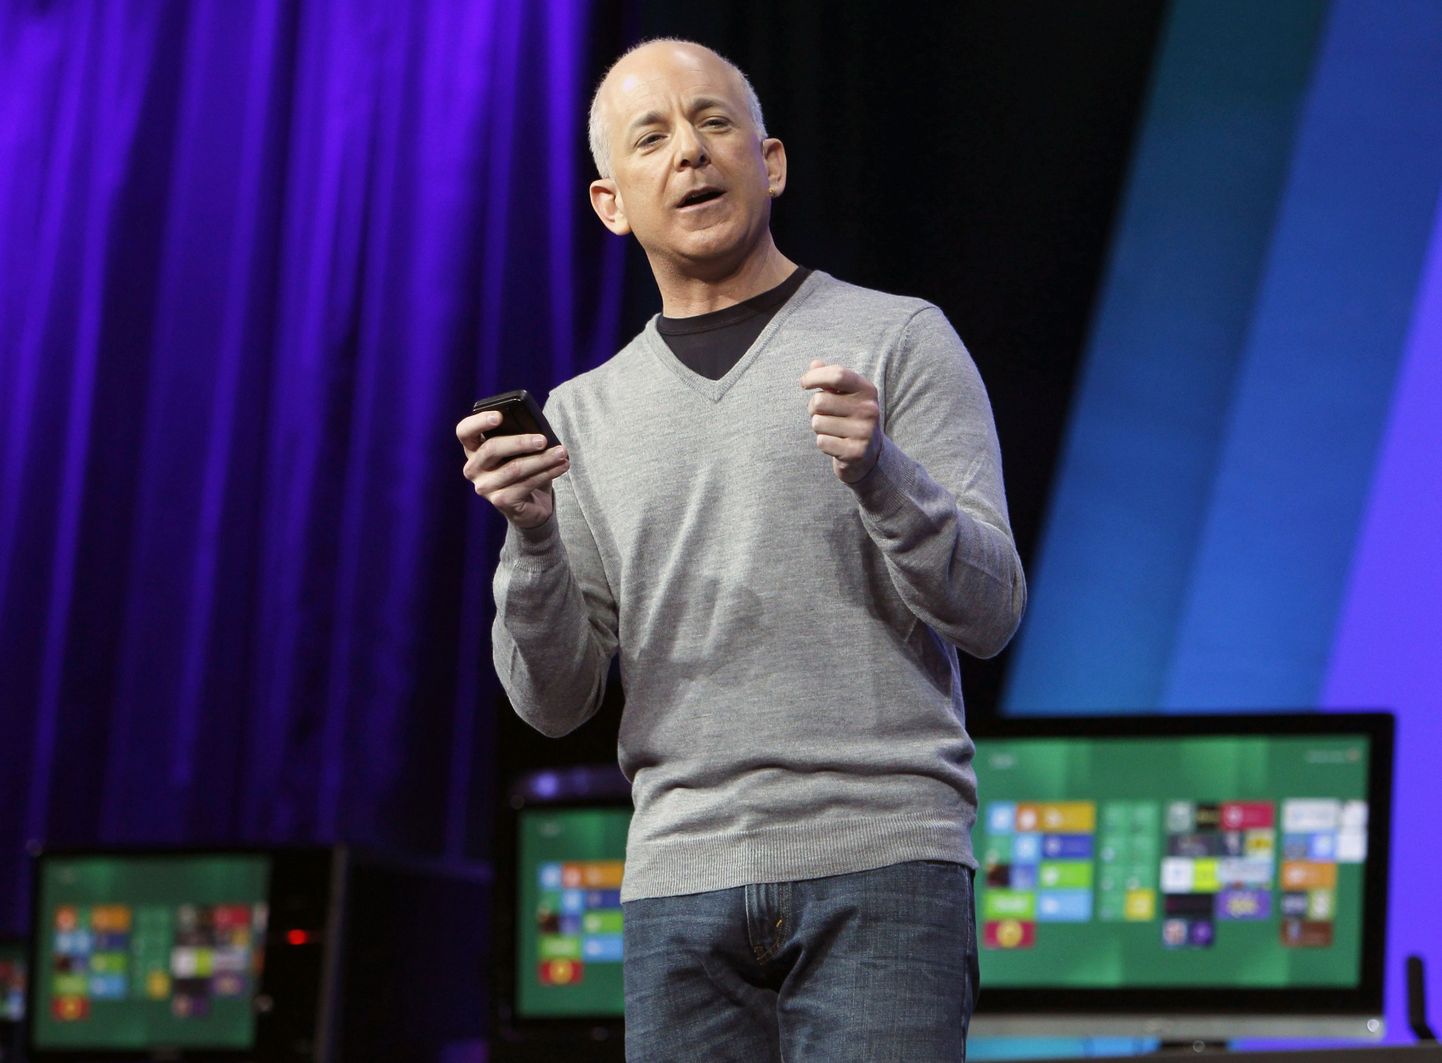 Microsoft Windowsi juht Steven Sinofsky tutvustas Windows 8.